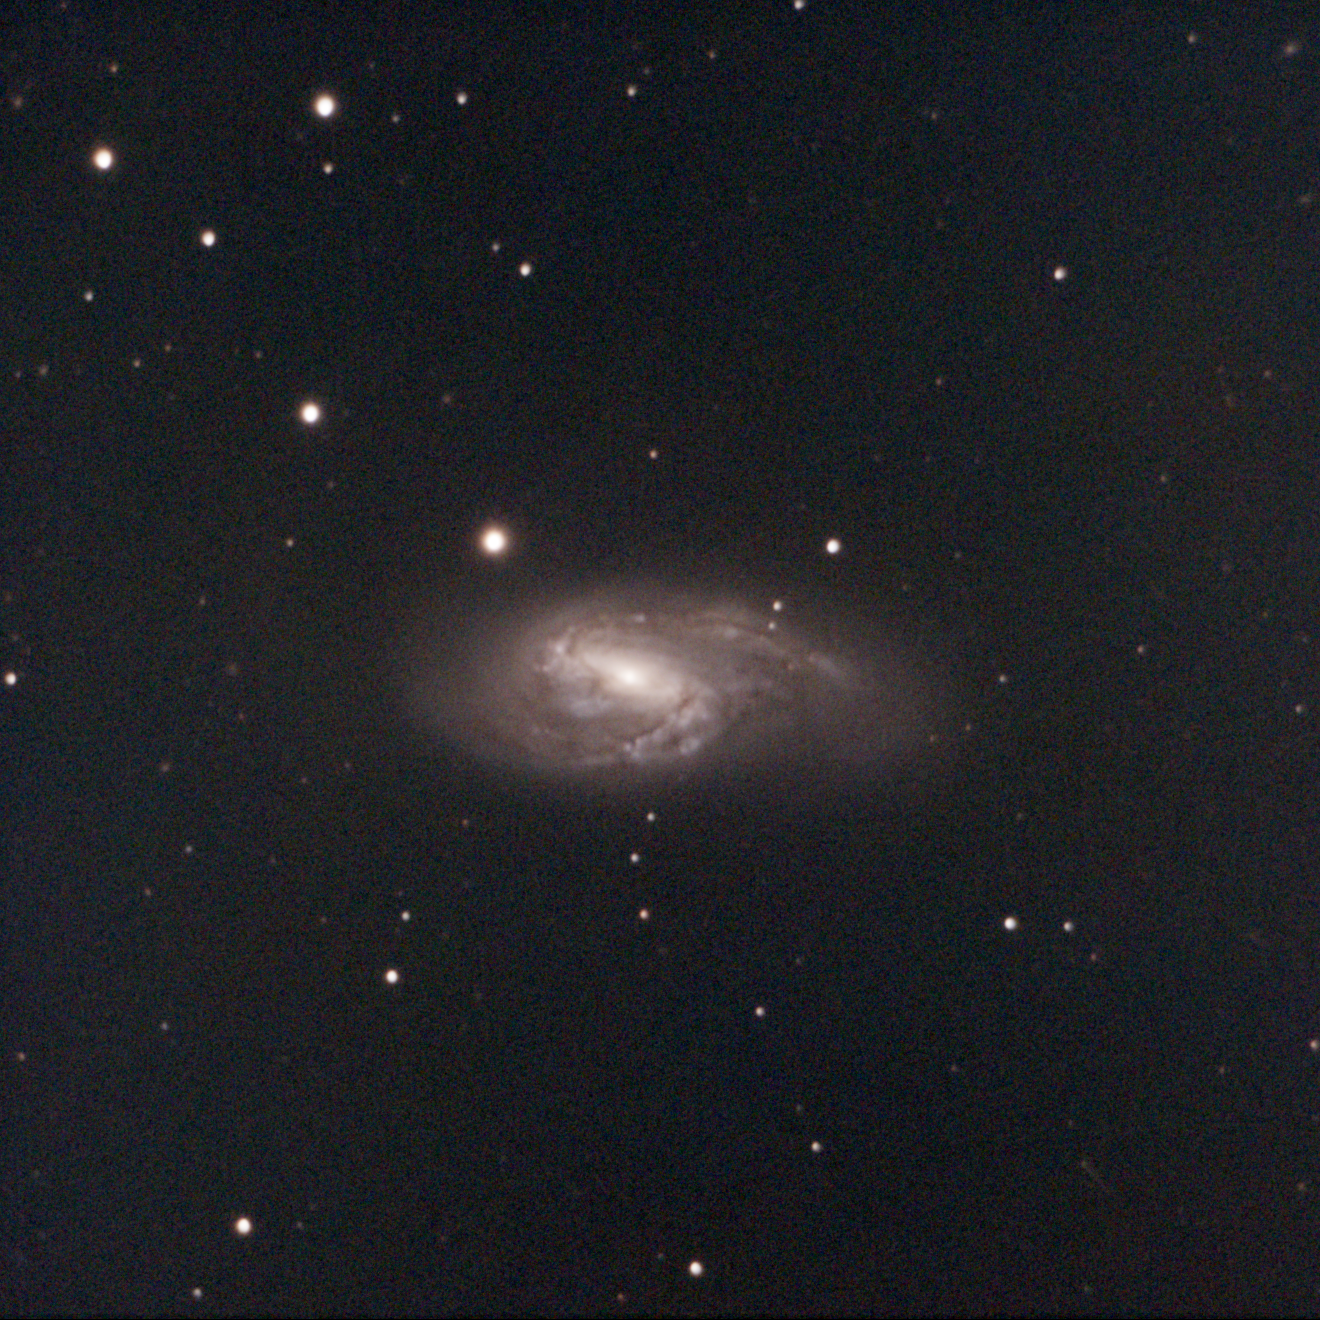 M66，是一个位于狮子座的螺旋星系，著名的狮子座三重星系之一，距离地球约3600万光年。RGB Bin2 10s * 434，共计1.2小时曝光